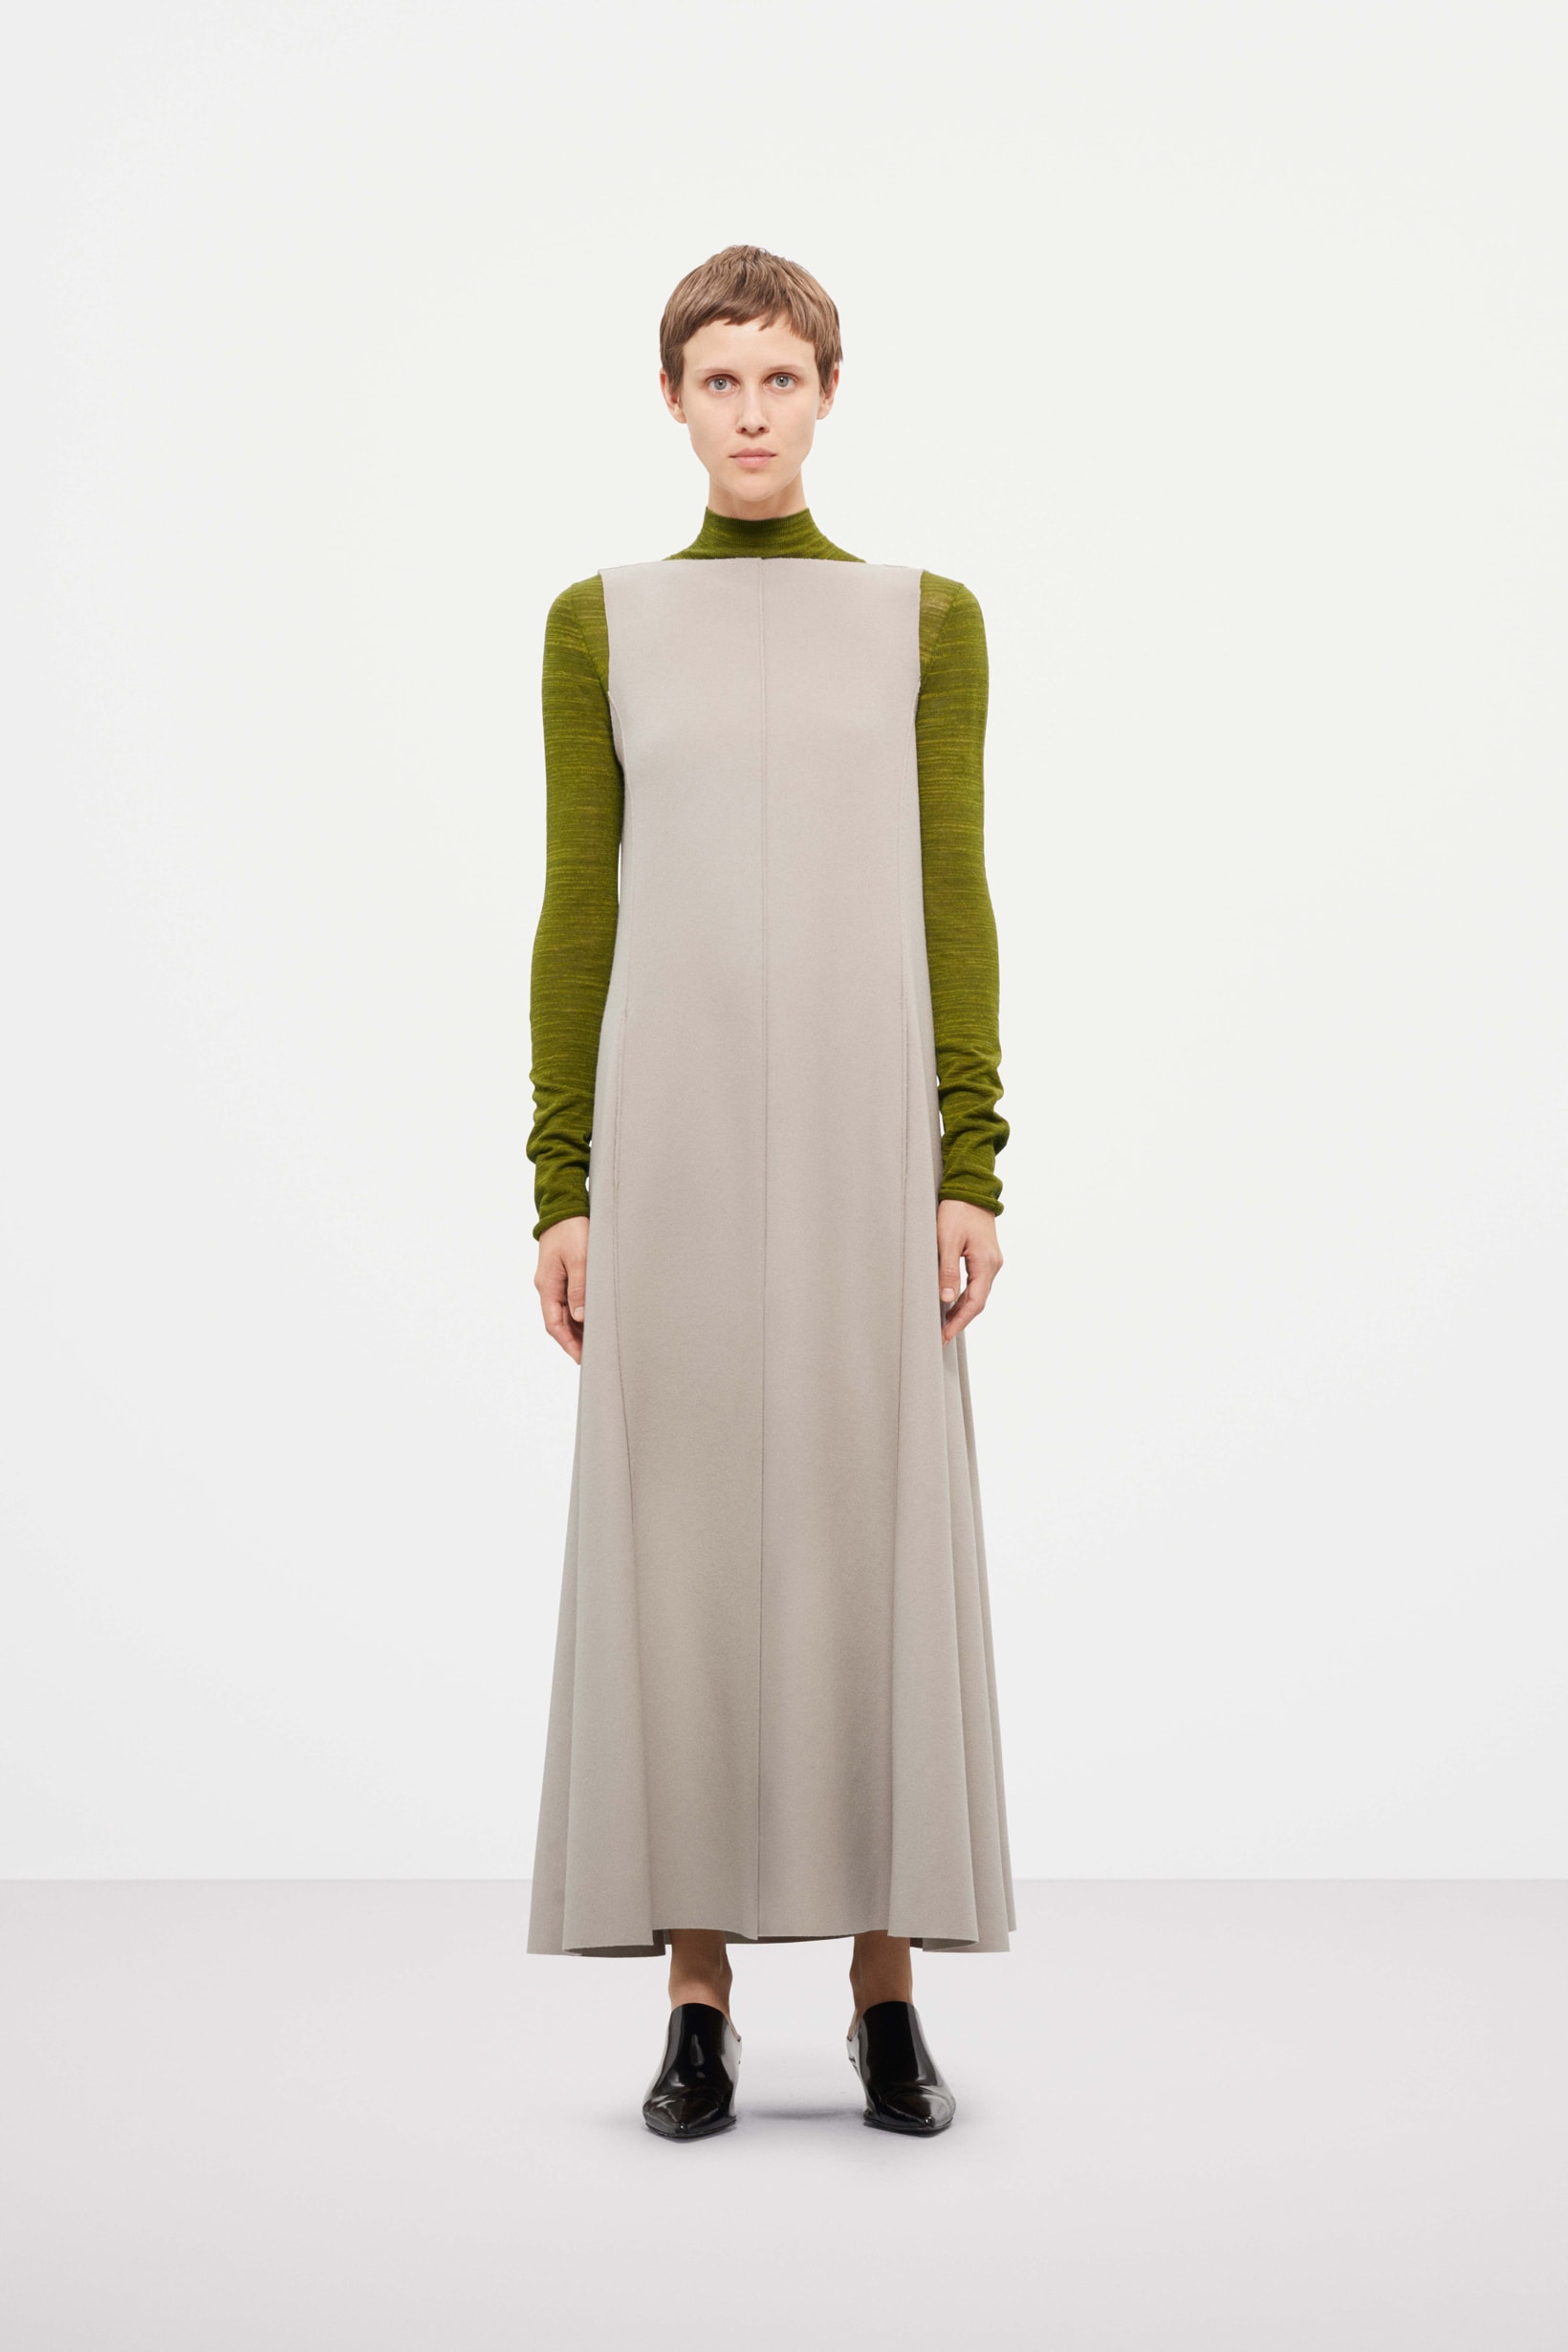 Cos Fall Winter 2019 Lookbook Top Green Dress Grey